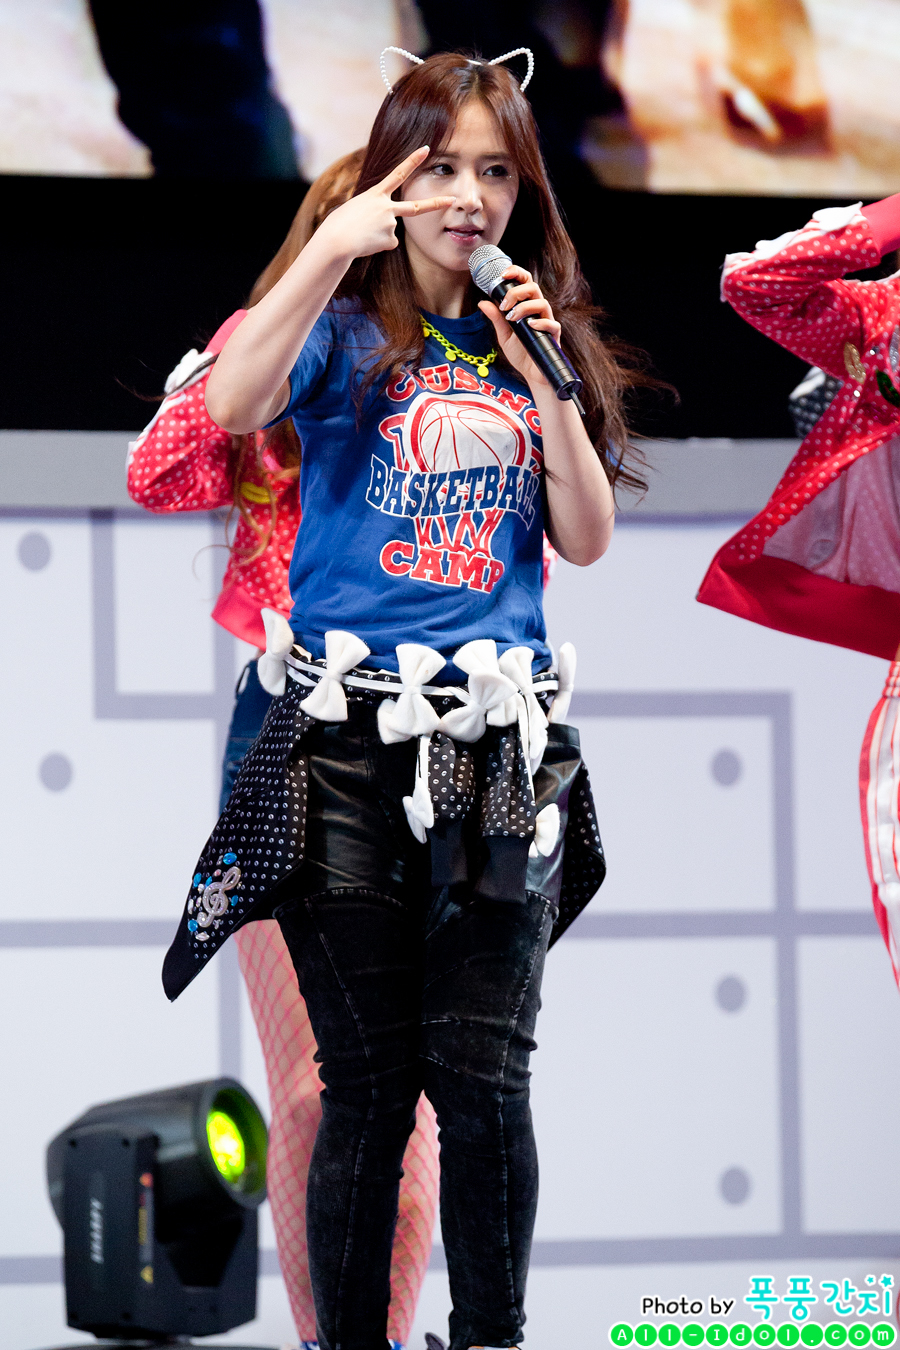 [PIC][07-04-2013]SNSD biểu diễn tại "LG Cinema 3D Festival" ở Lotte World vào tối nay - Page 4 2478B5485161A2F40DFA58